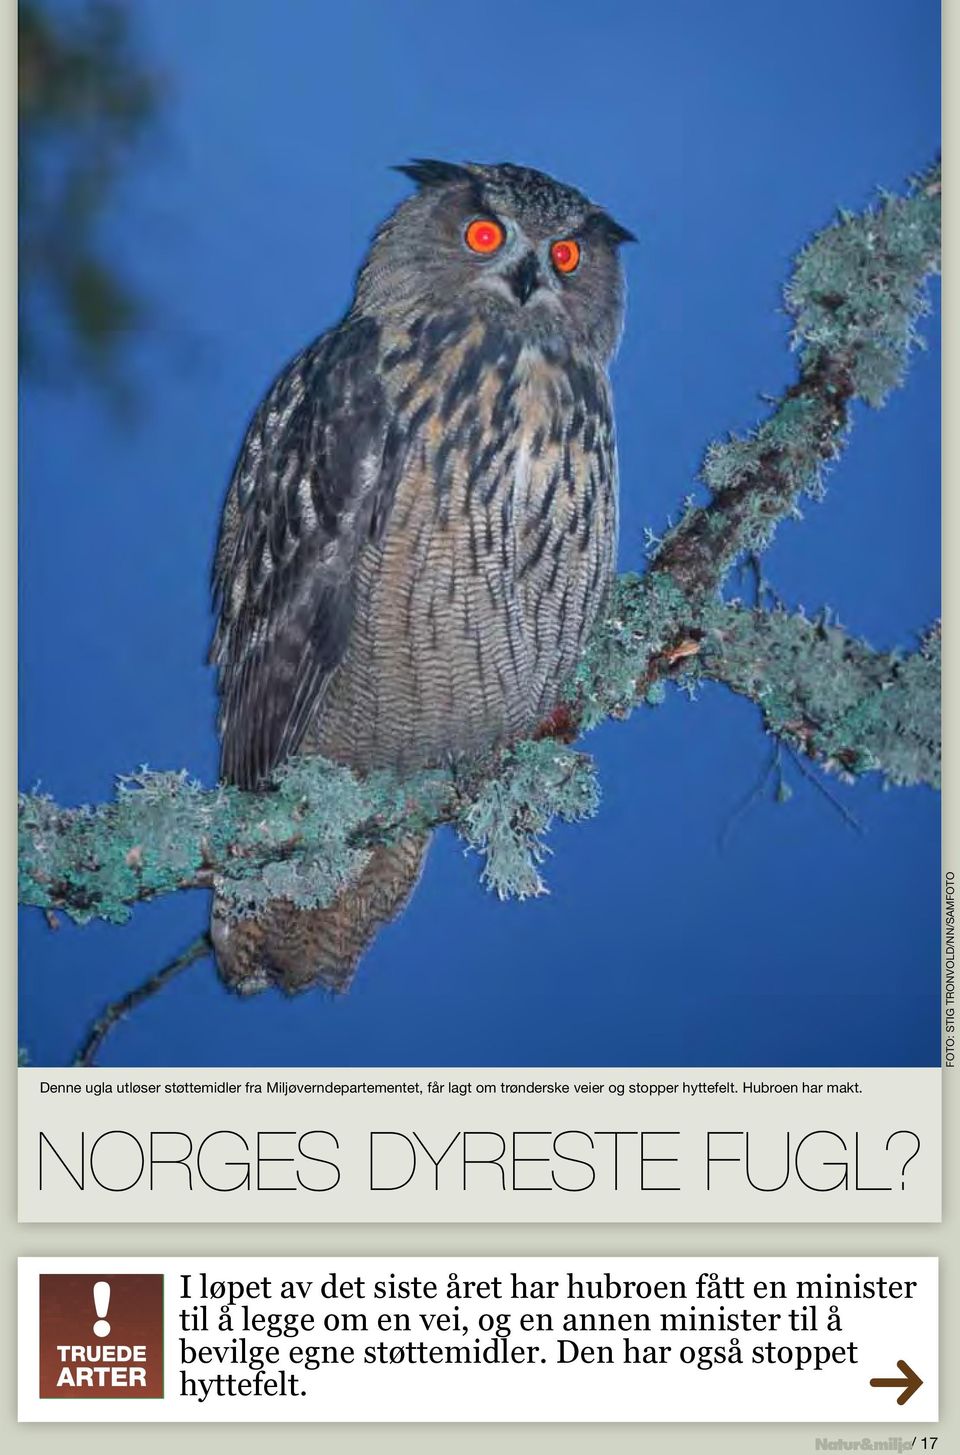 Hubroen har makt. Norges dyreste fugl?